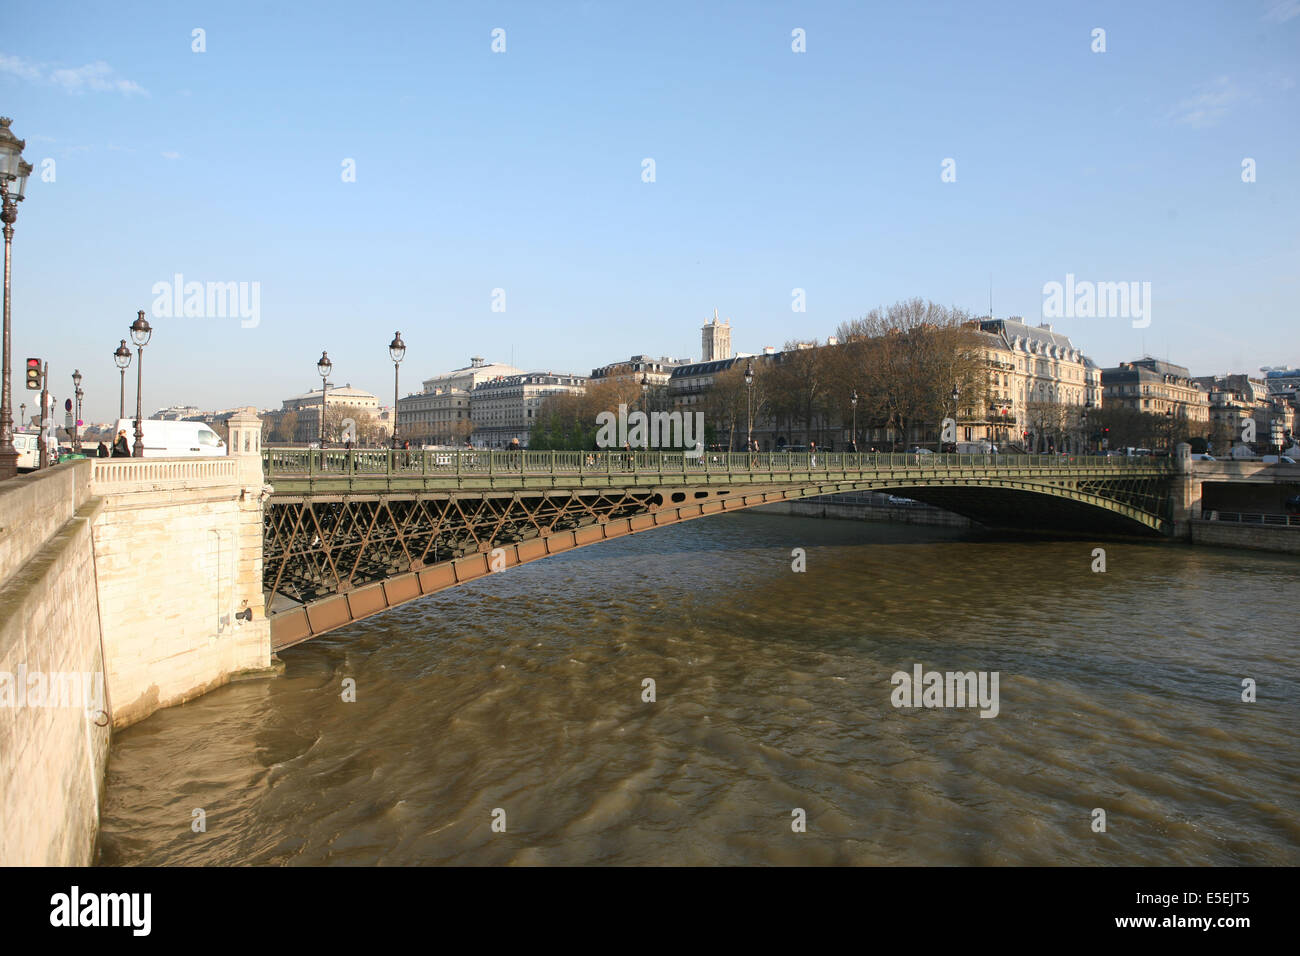 Frankreich, paris, 1e, pont d'arcole, Detail, Sein, prunkvolle Elemente, Struktur metallique, Stockfoto